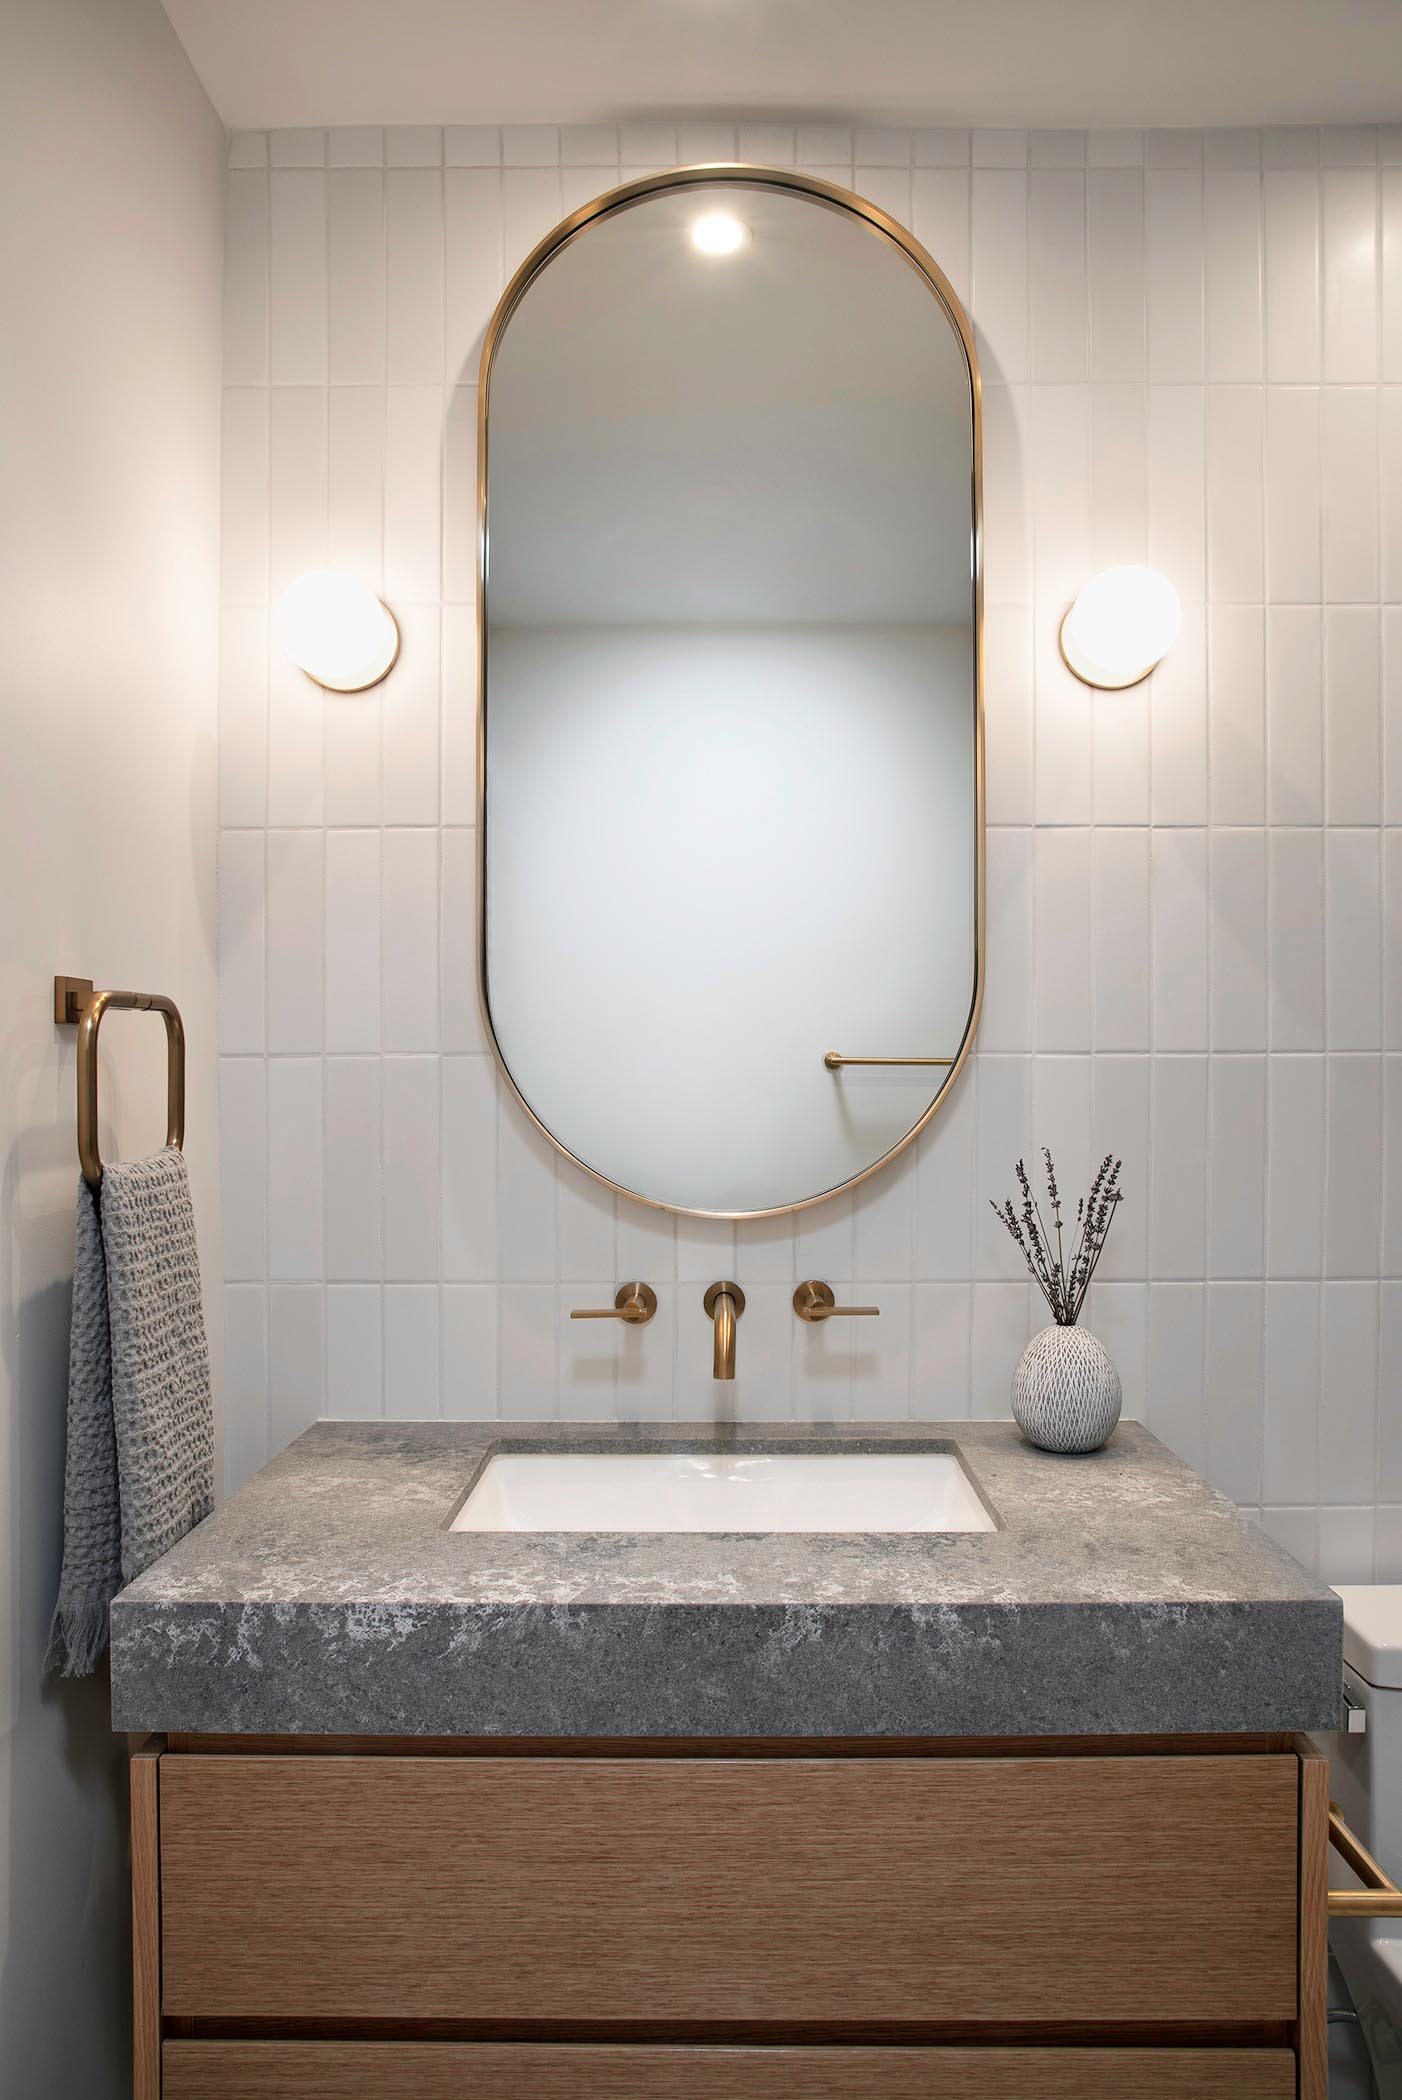 В этой ванной комнате есть нестандартное зеркало в форме пилюли, окруженное специальными настенными бра, которое висит над деревянным туалетным столиком с серой столешницей и белой раковиной под столешницей.